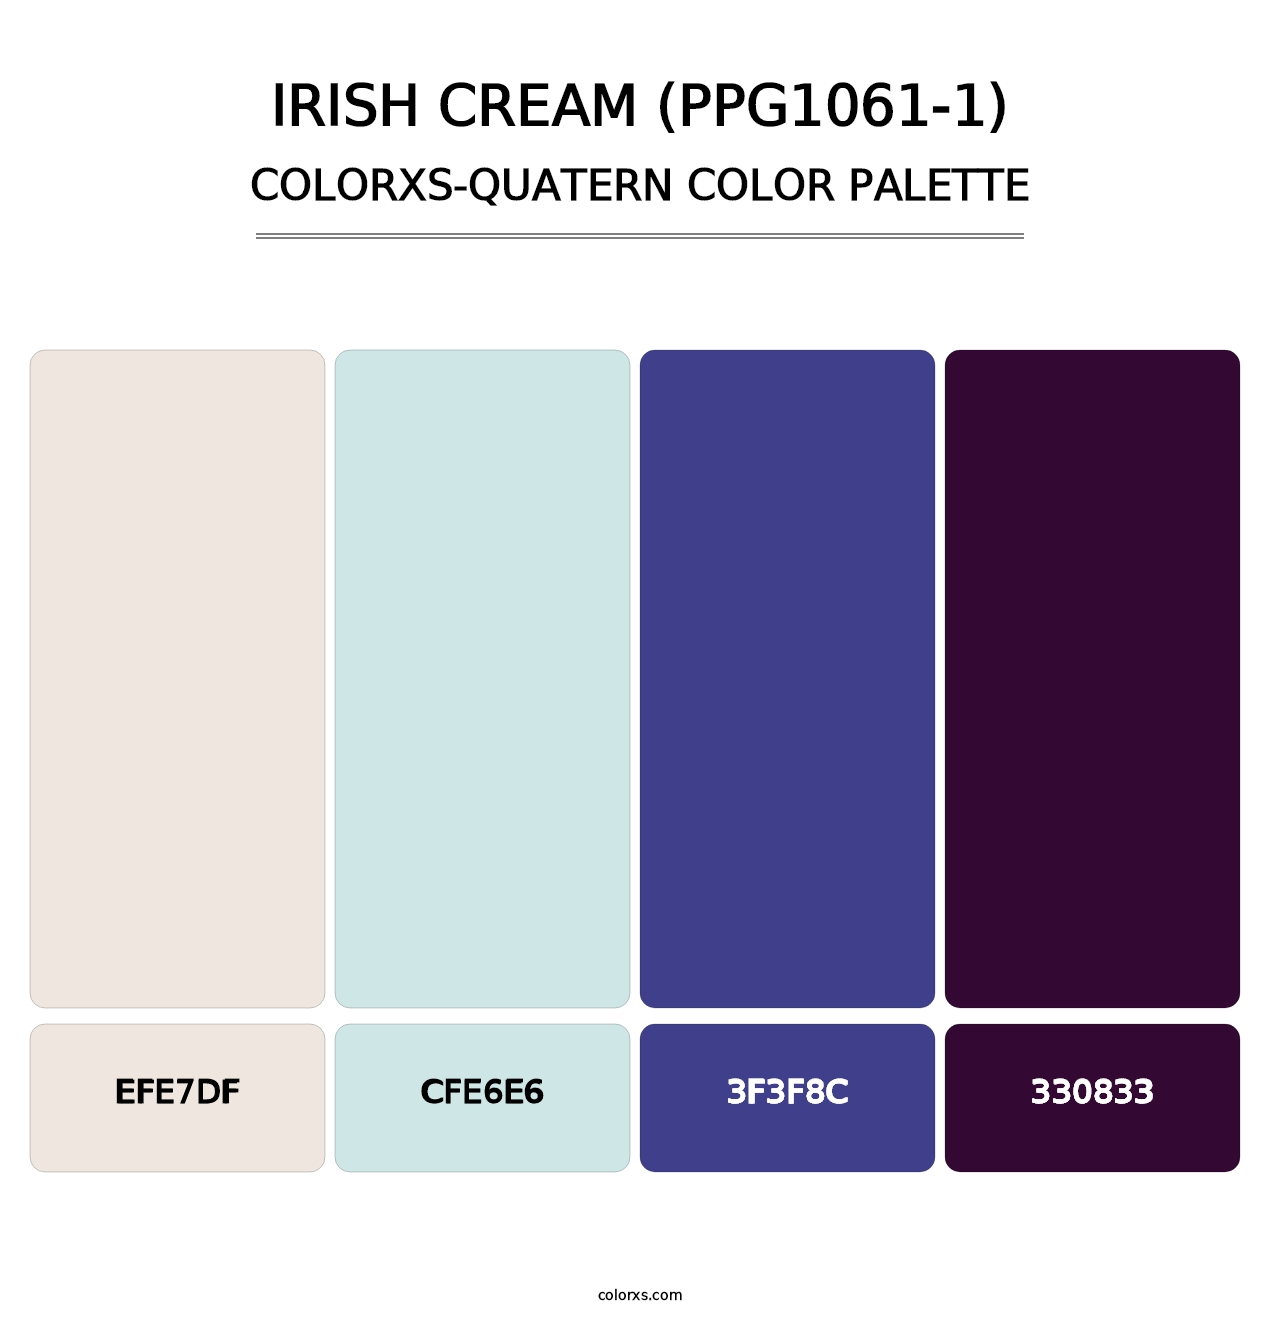 Irish Cream (PPG1061-1) - Colorxs Quatern Palette